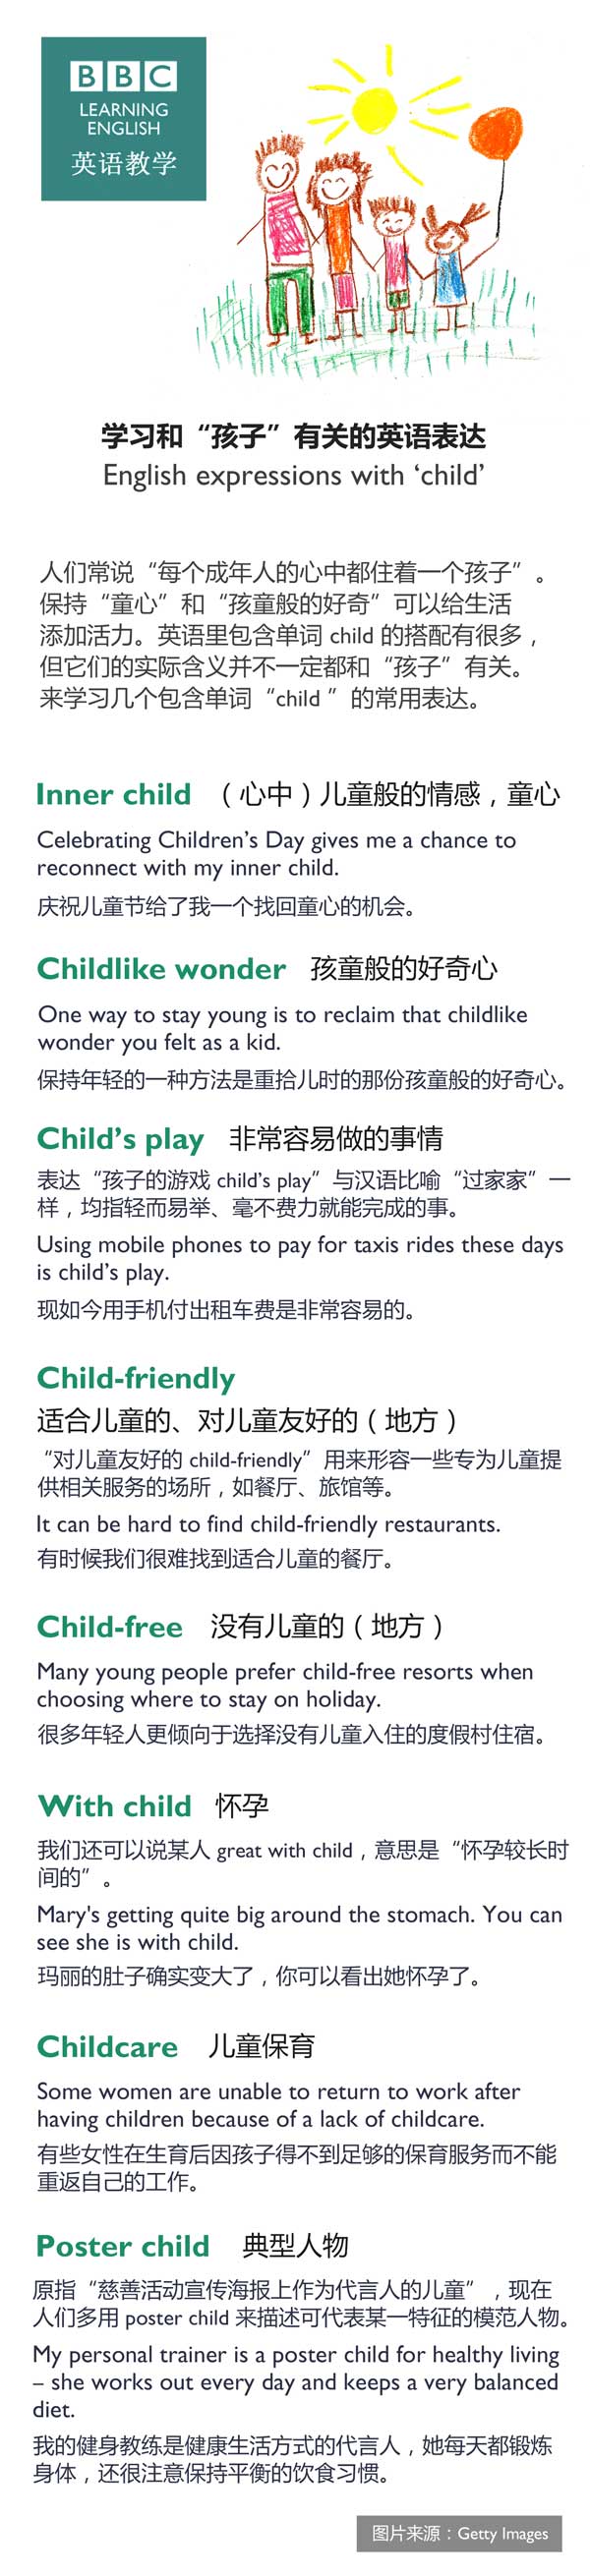 学习和“孩子”有关的英语表达